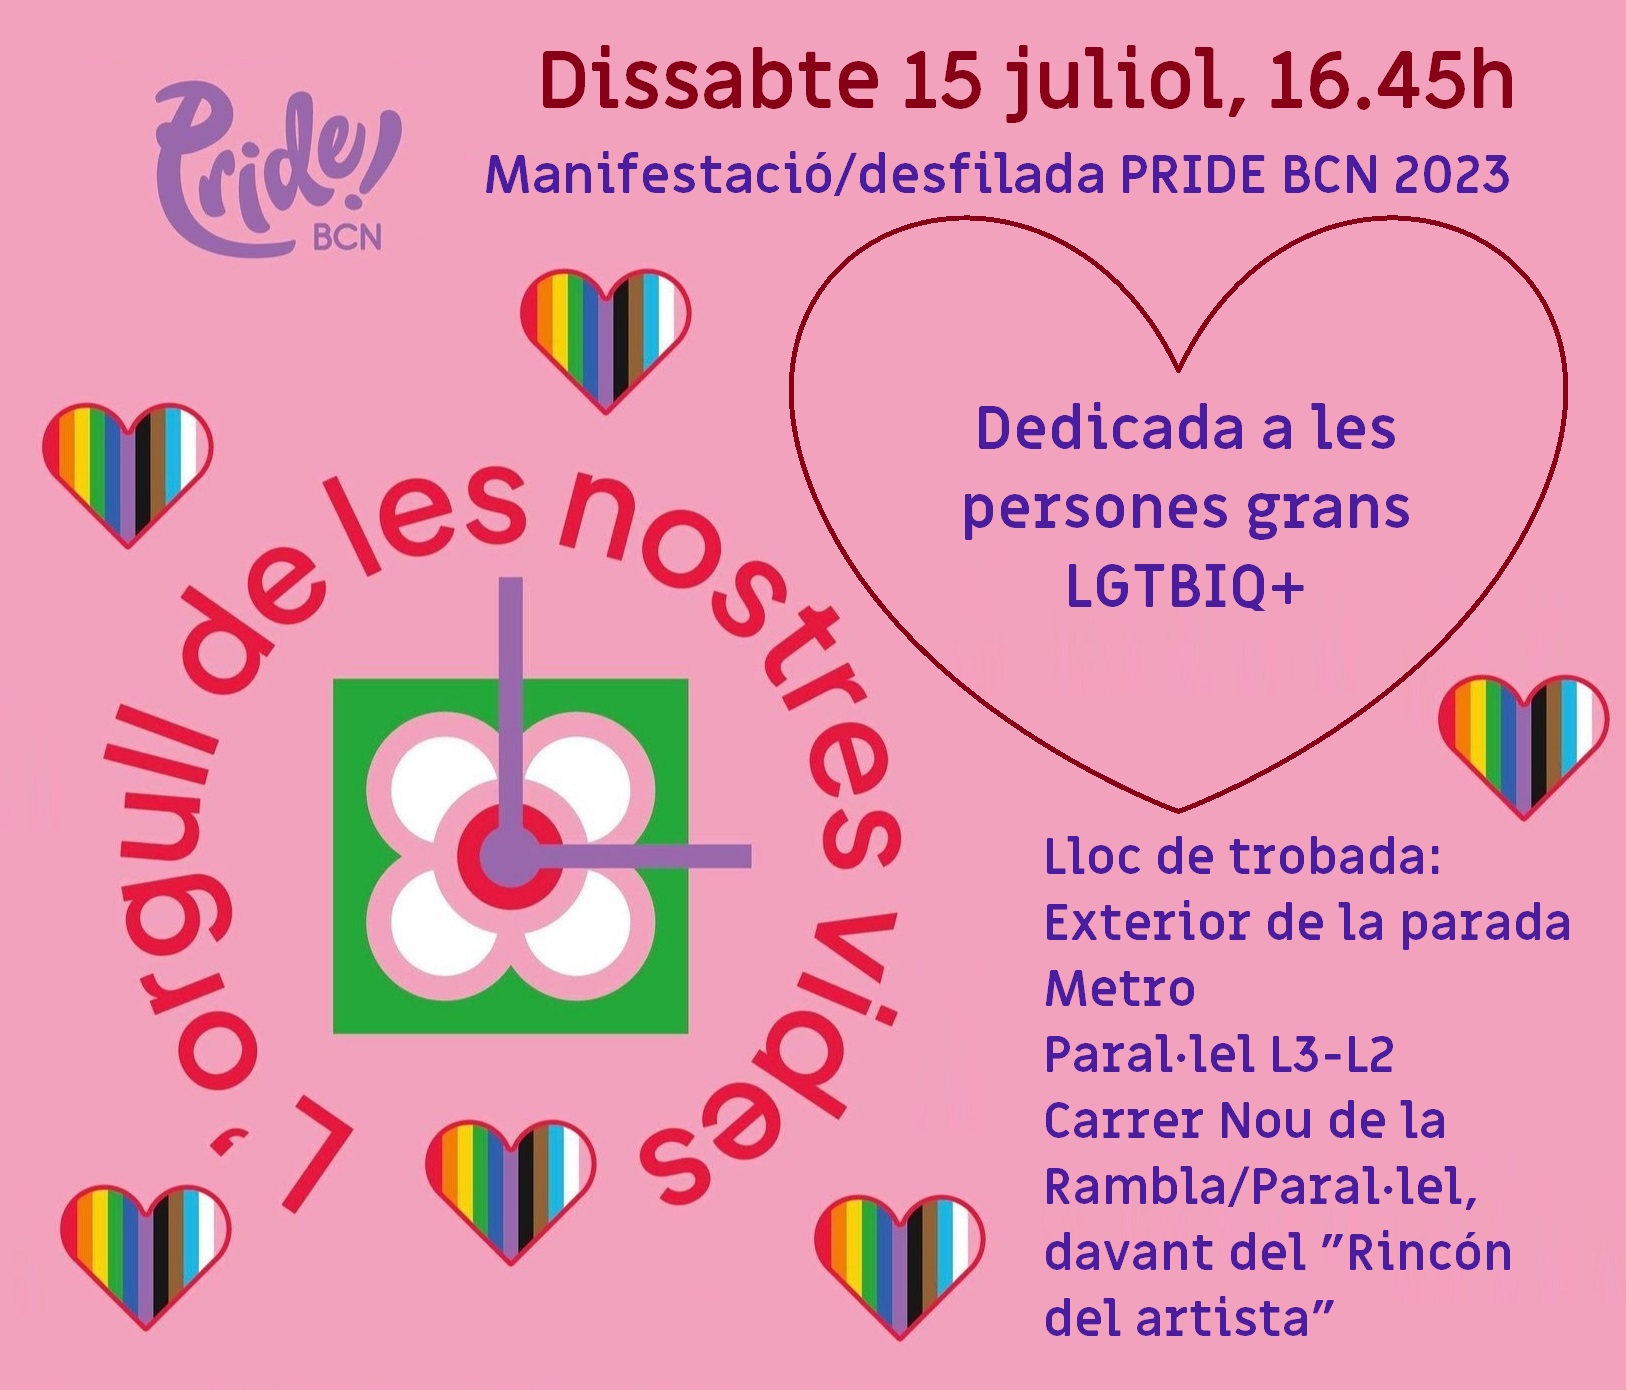 Dissabte, 15 de juliol de 2023 a les 16:45: #PrideBCN2023